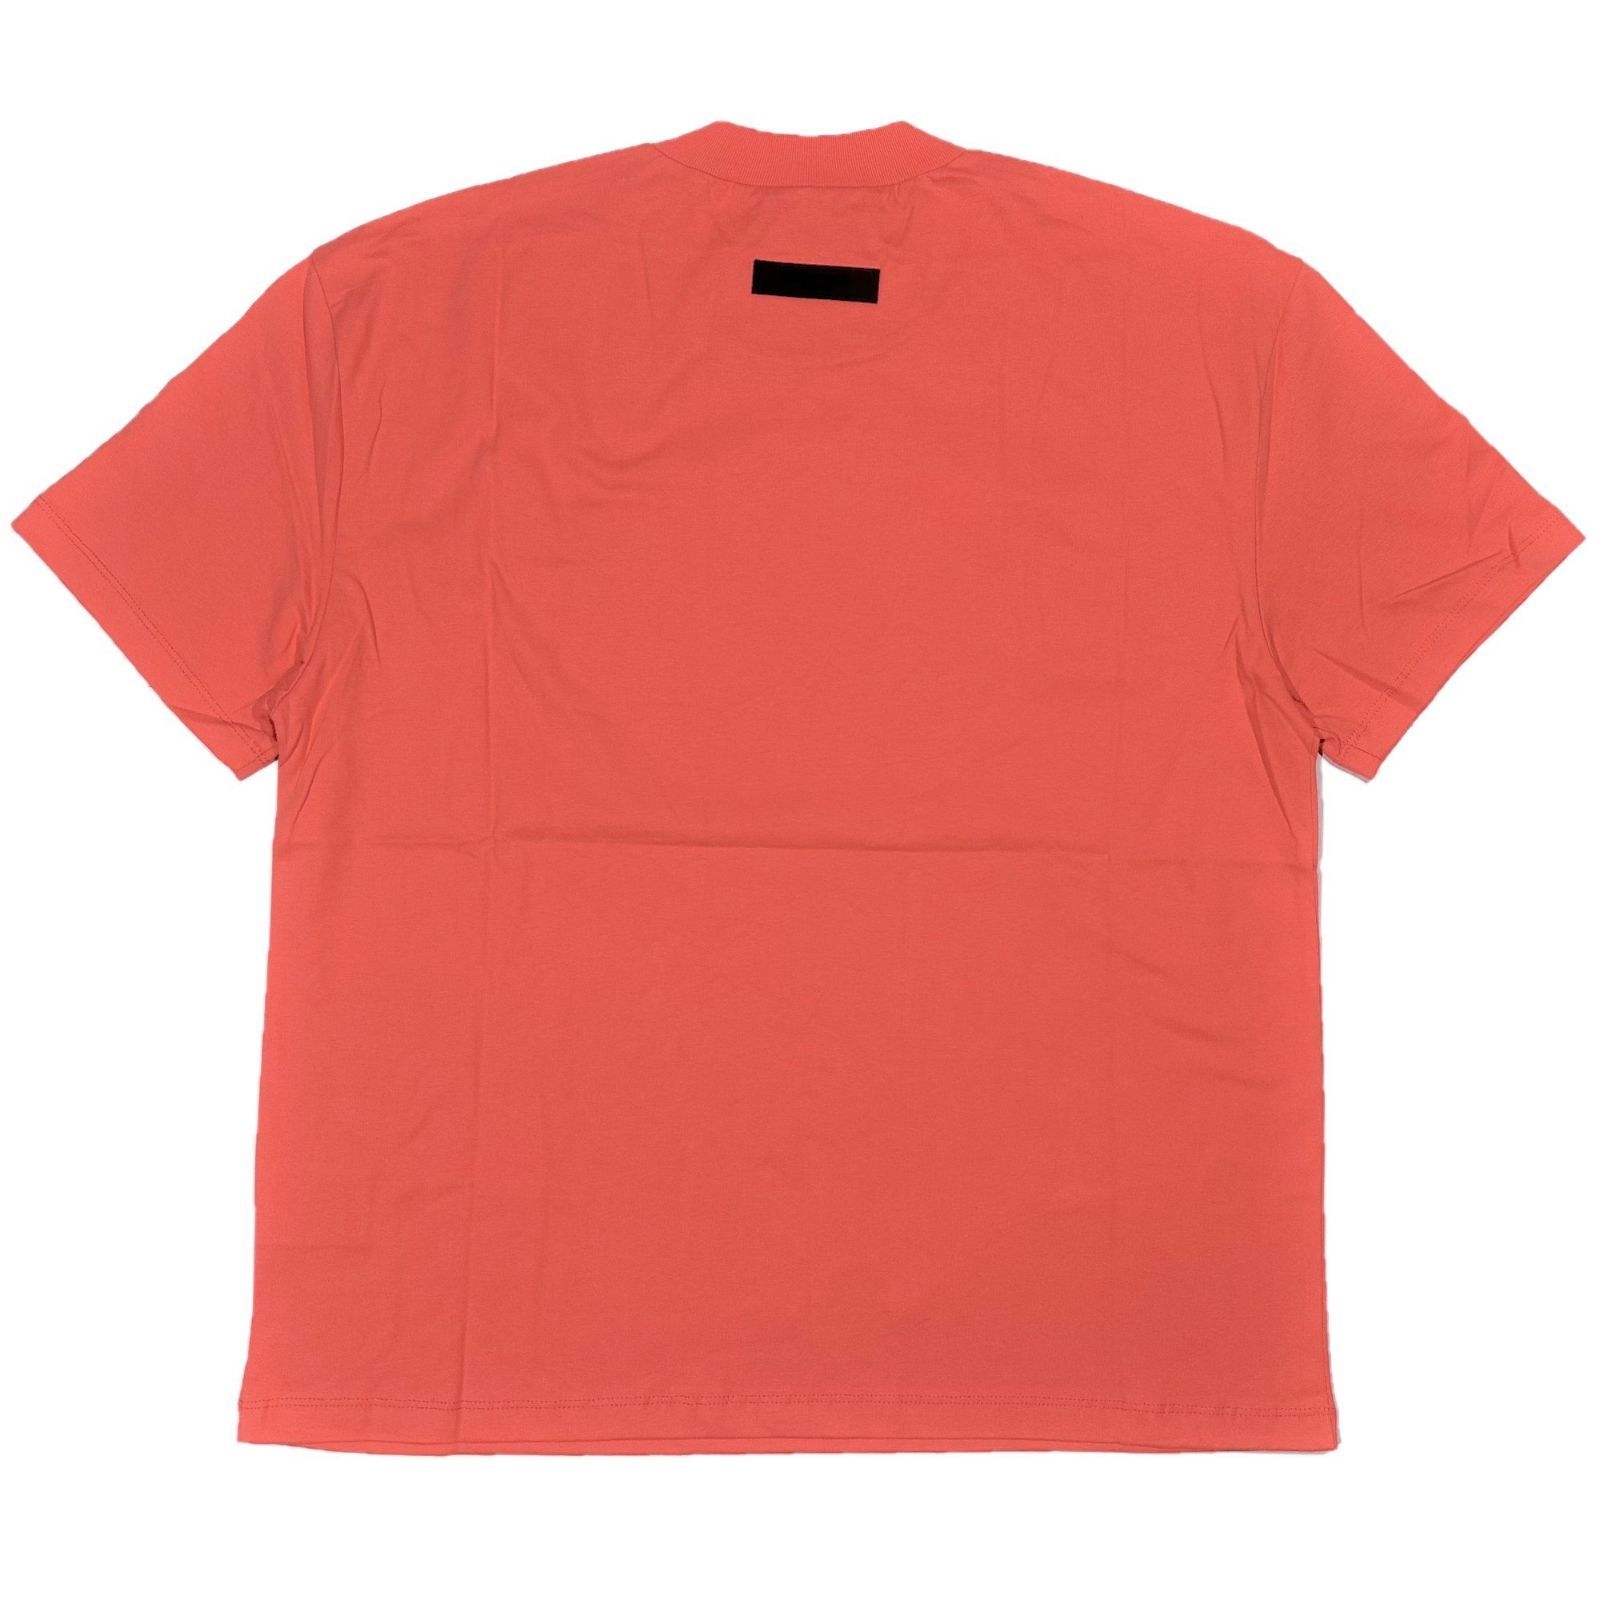 FOG エッセンシャルズ フロントロゴ 半袖 Tシャツ ピンクレッド